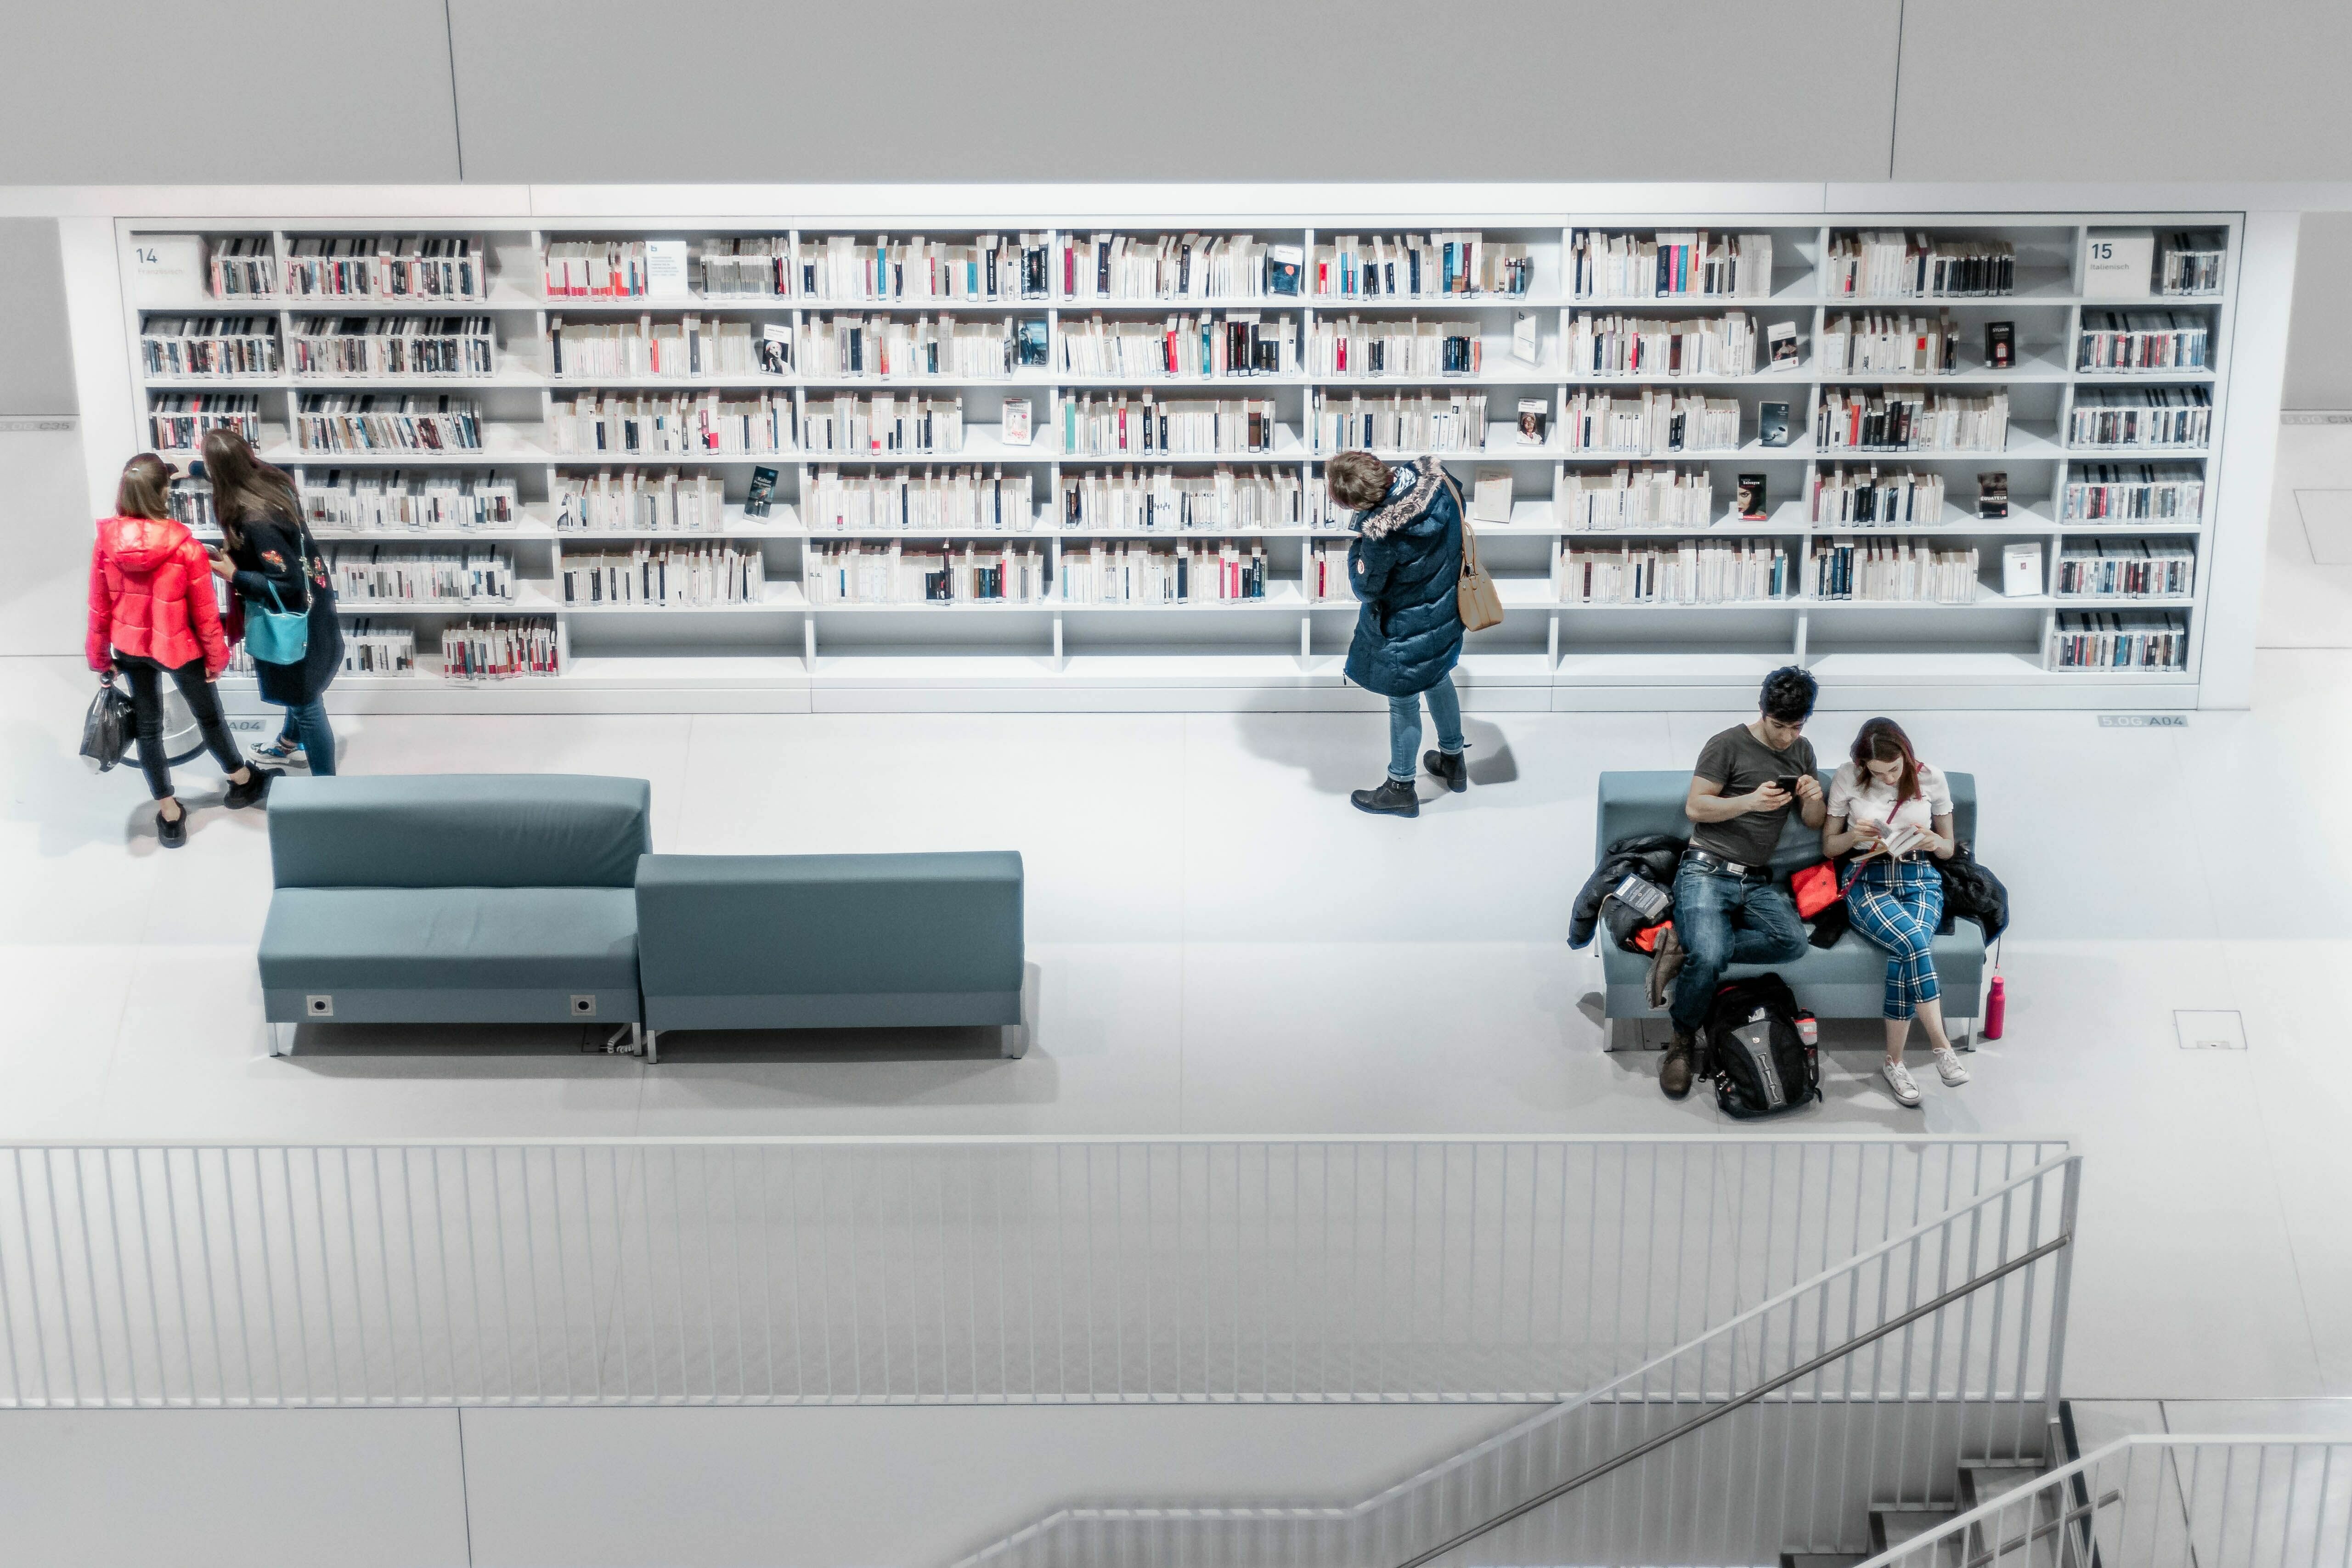 Abbildung einer Bibliothek mit Bücherregalen und Sitzecken sowie Personen, die lesen.